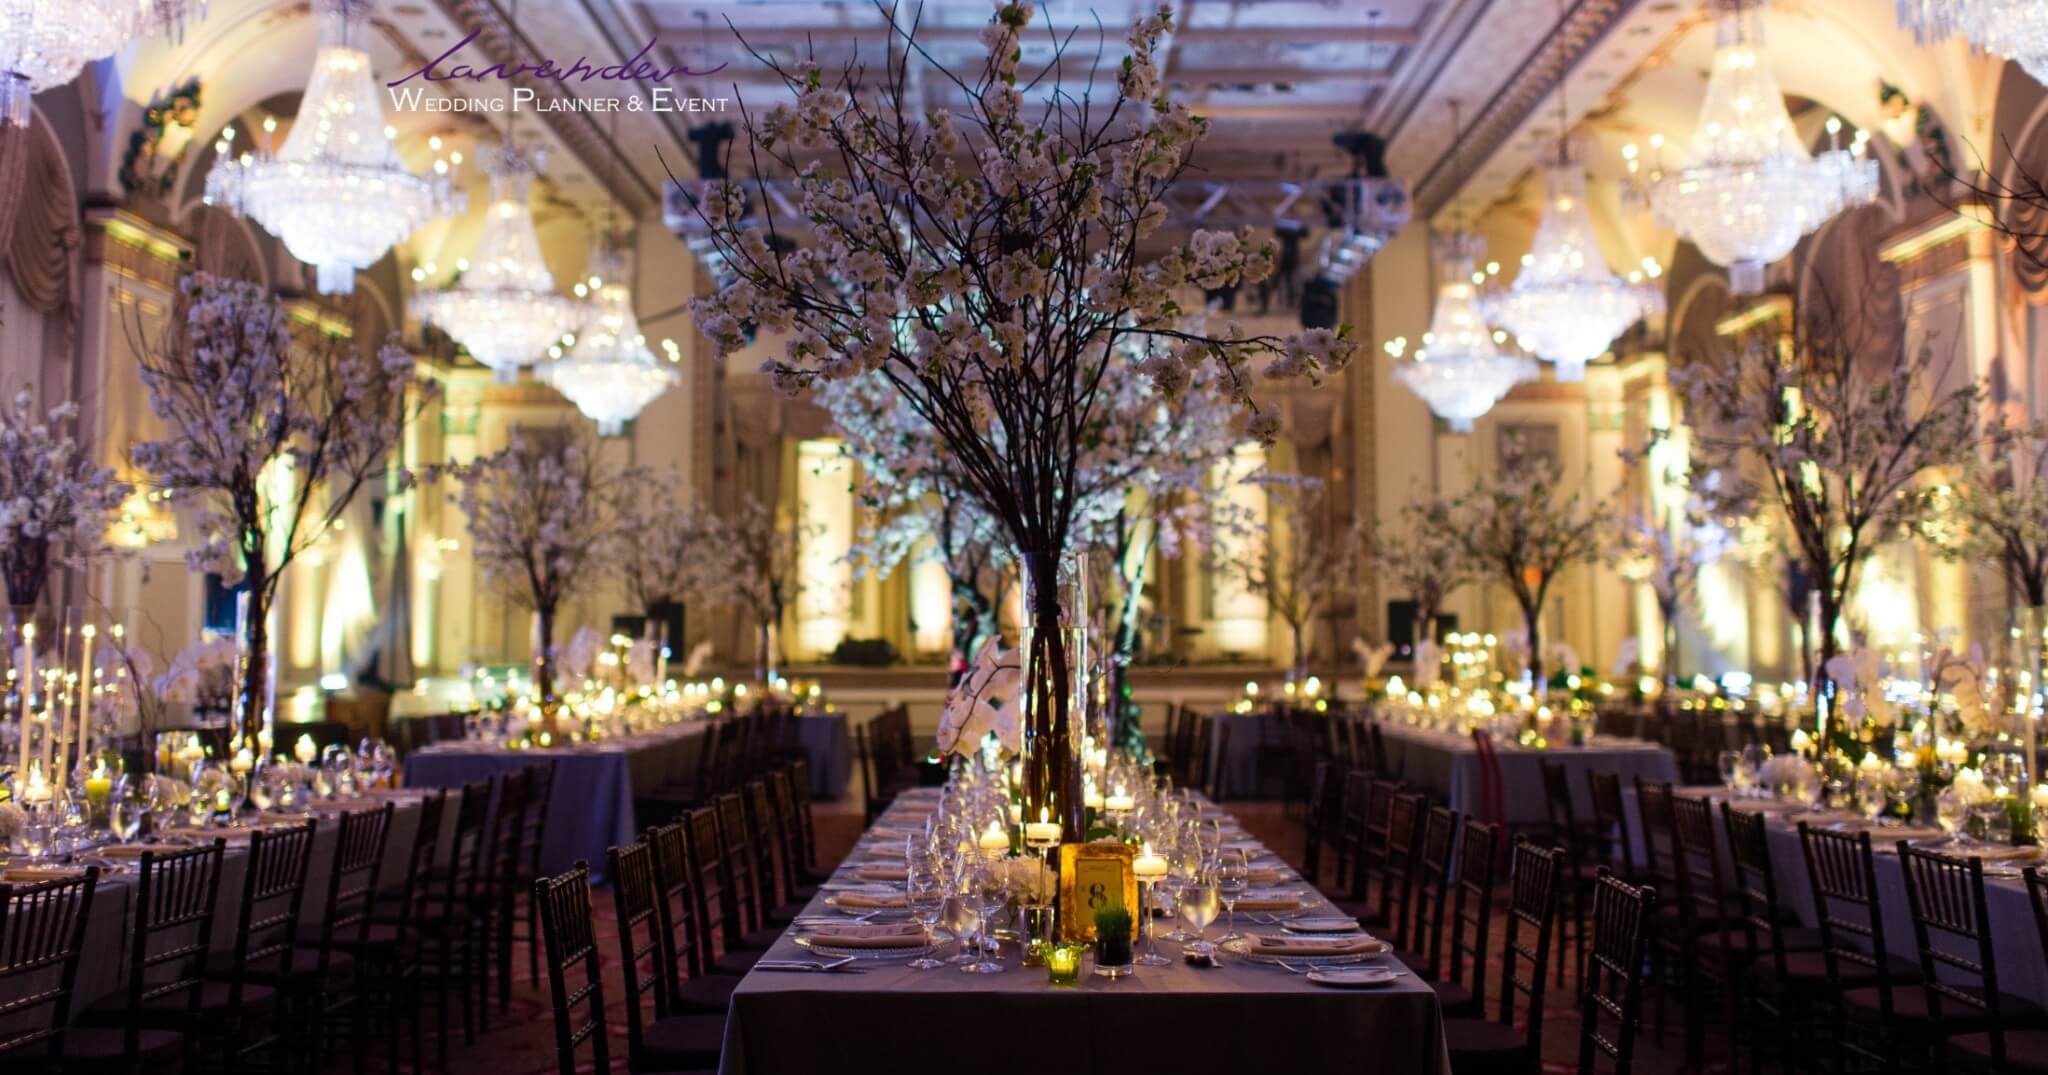 Lavender Wedding Planner & Event - Địa chỉ cung cấp dịch vụ Wedding Planner giá rẻ